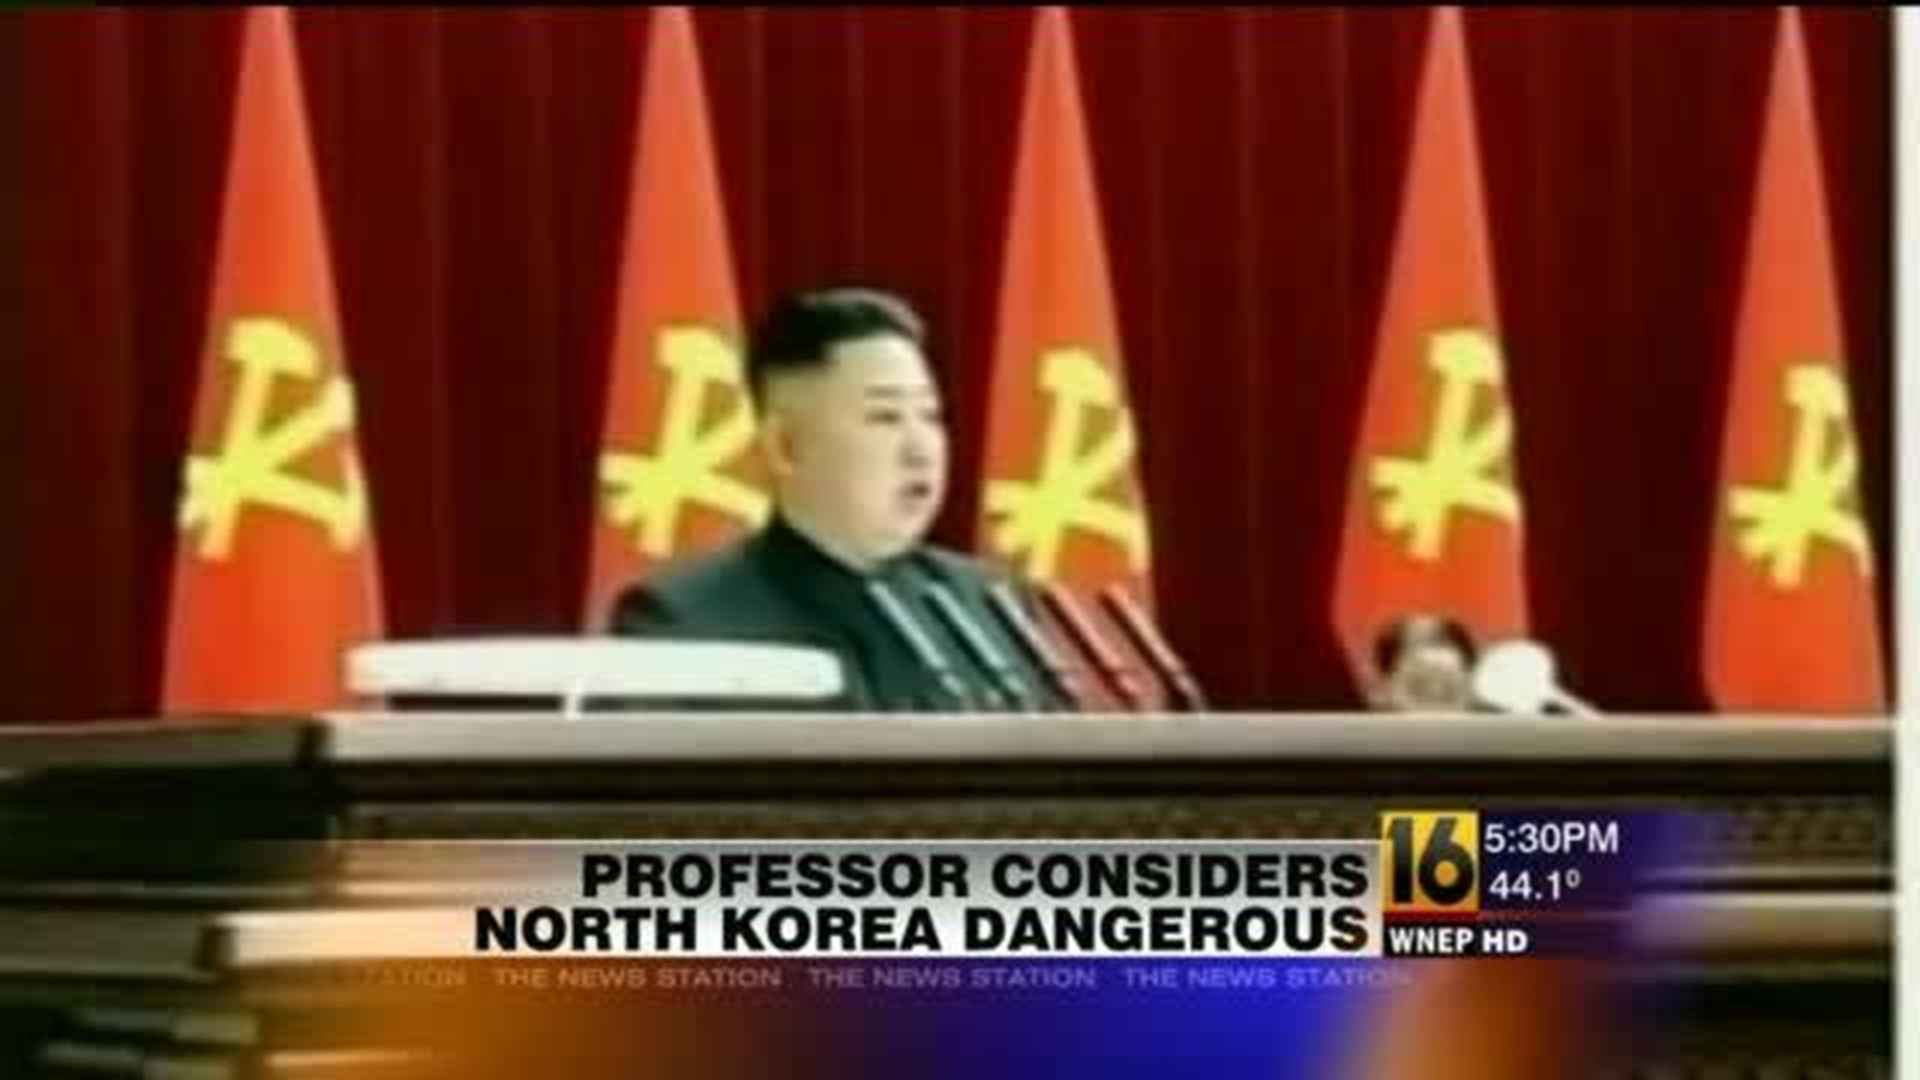 Professor Considers North Korea Very Dangerous